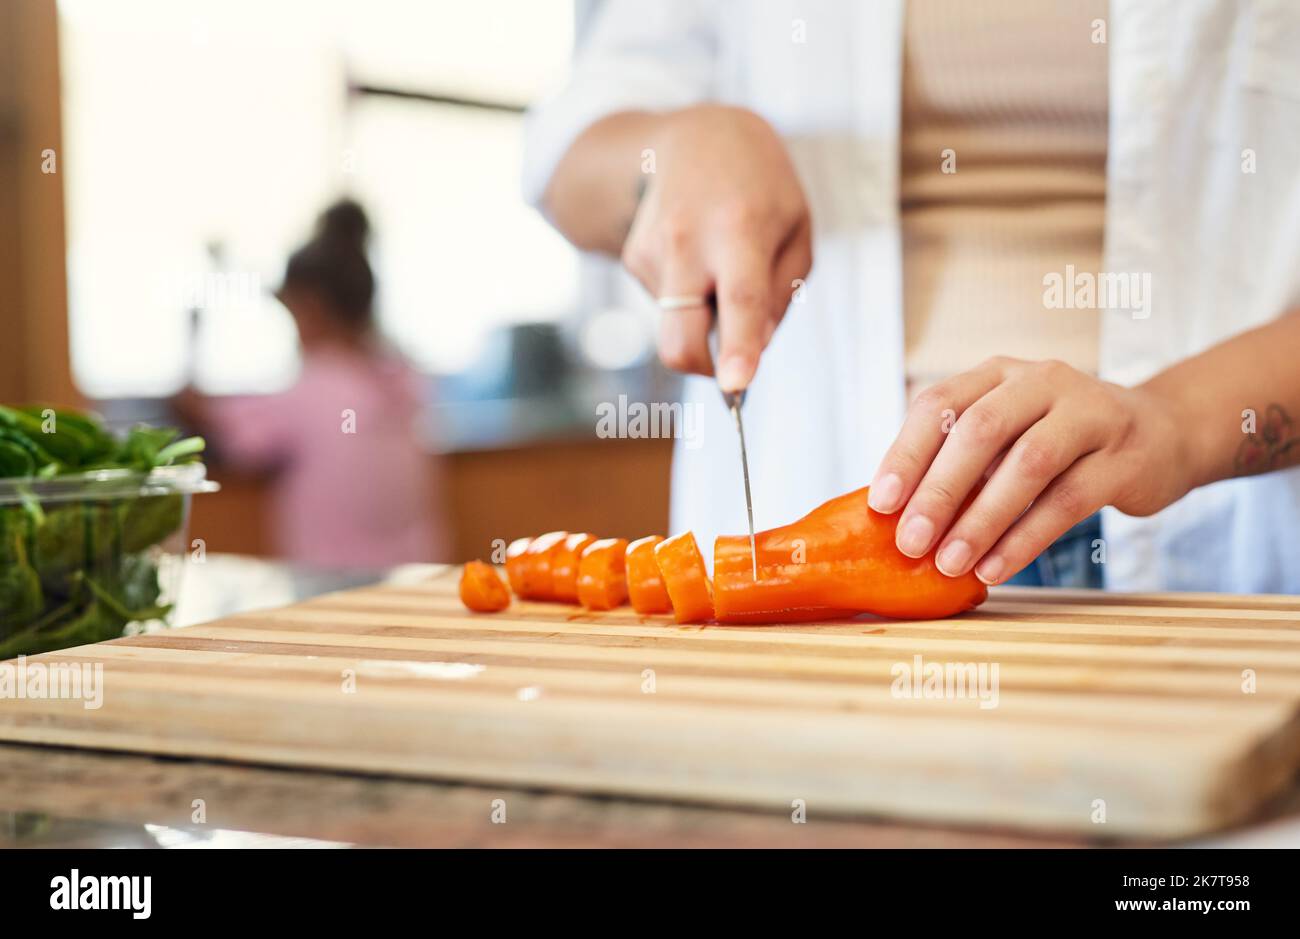 Fügen Sie einfach ein paar Karotten hinzu. Eine Frau hackt zu Hause Karotten. Stockfoto